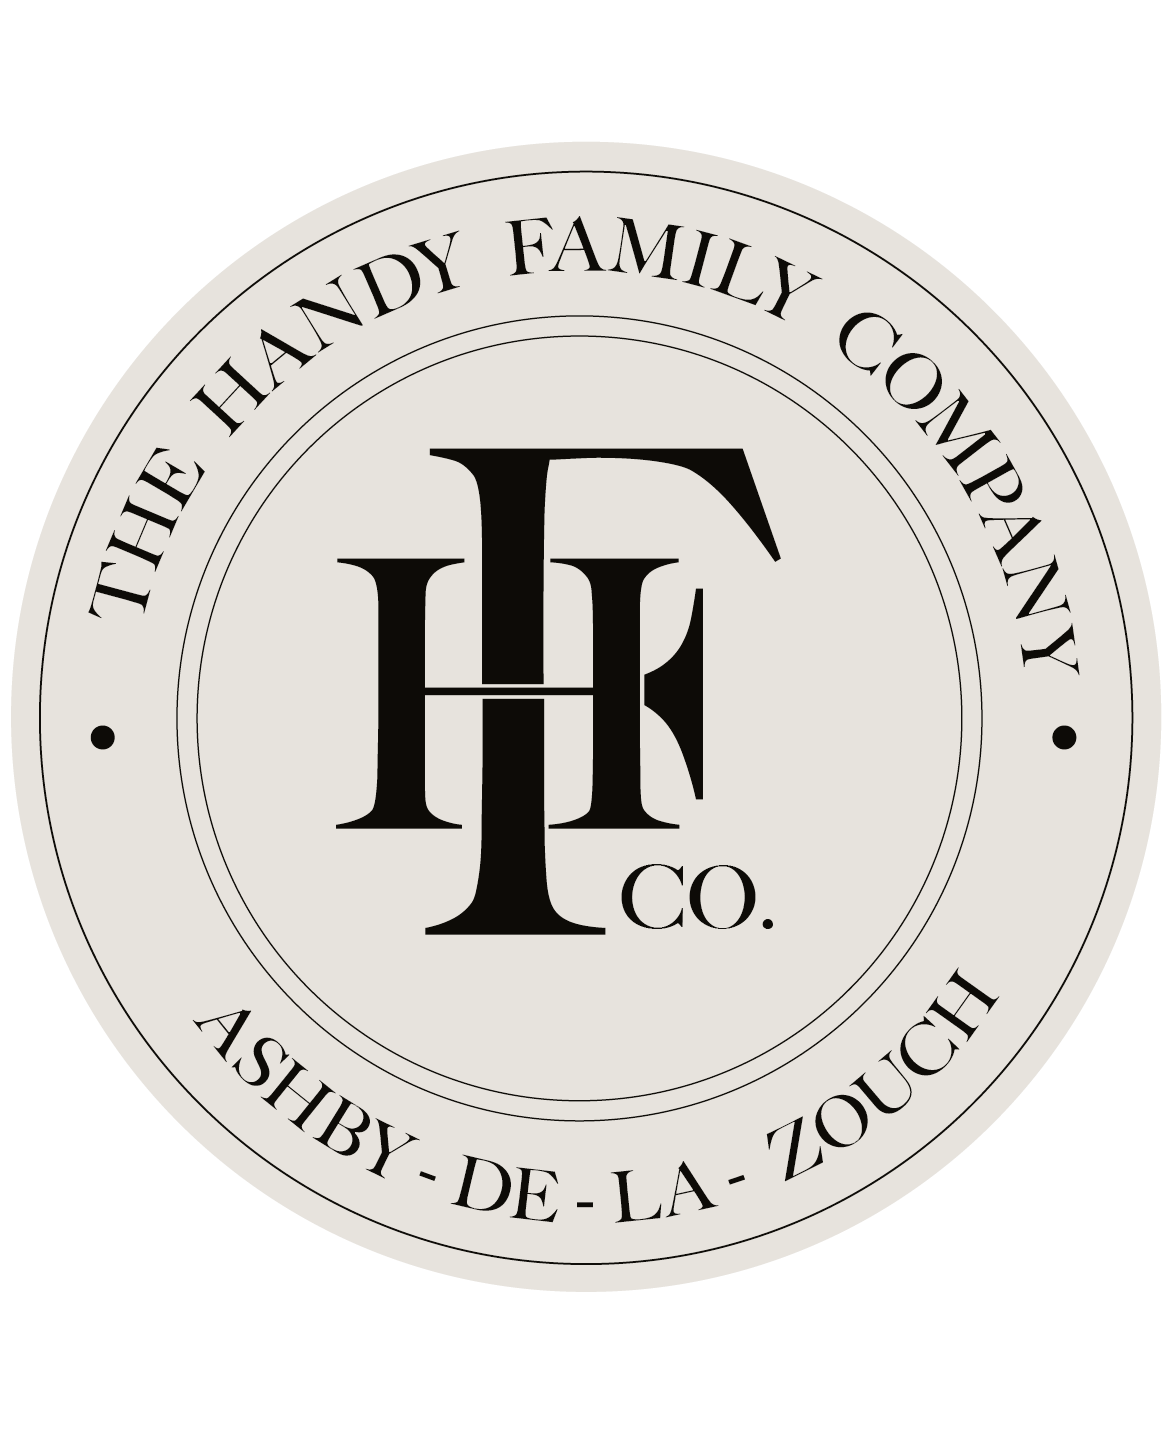 The Handy Family Company